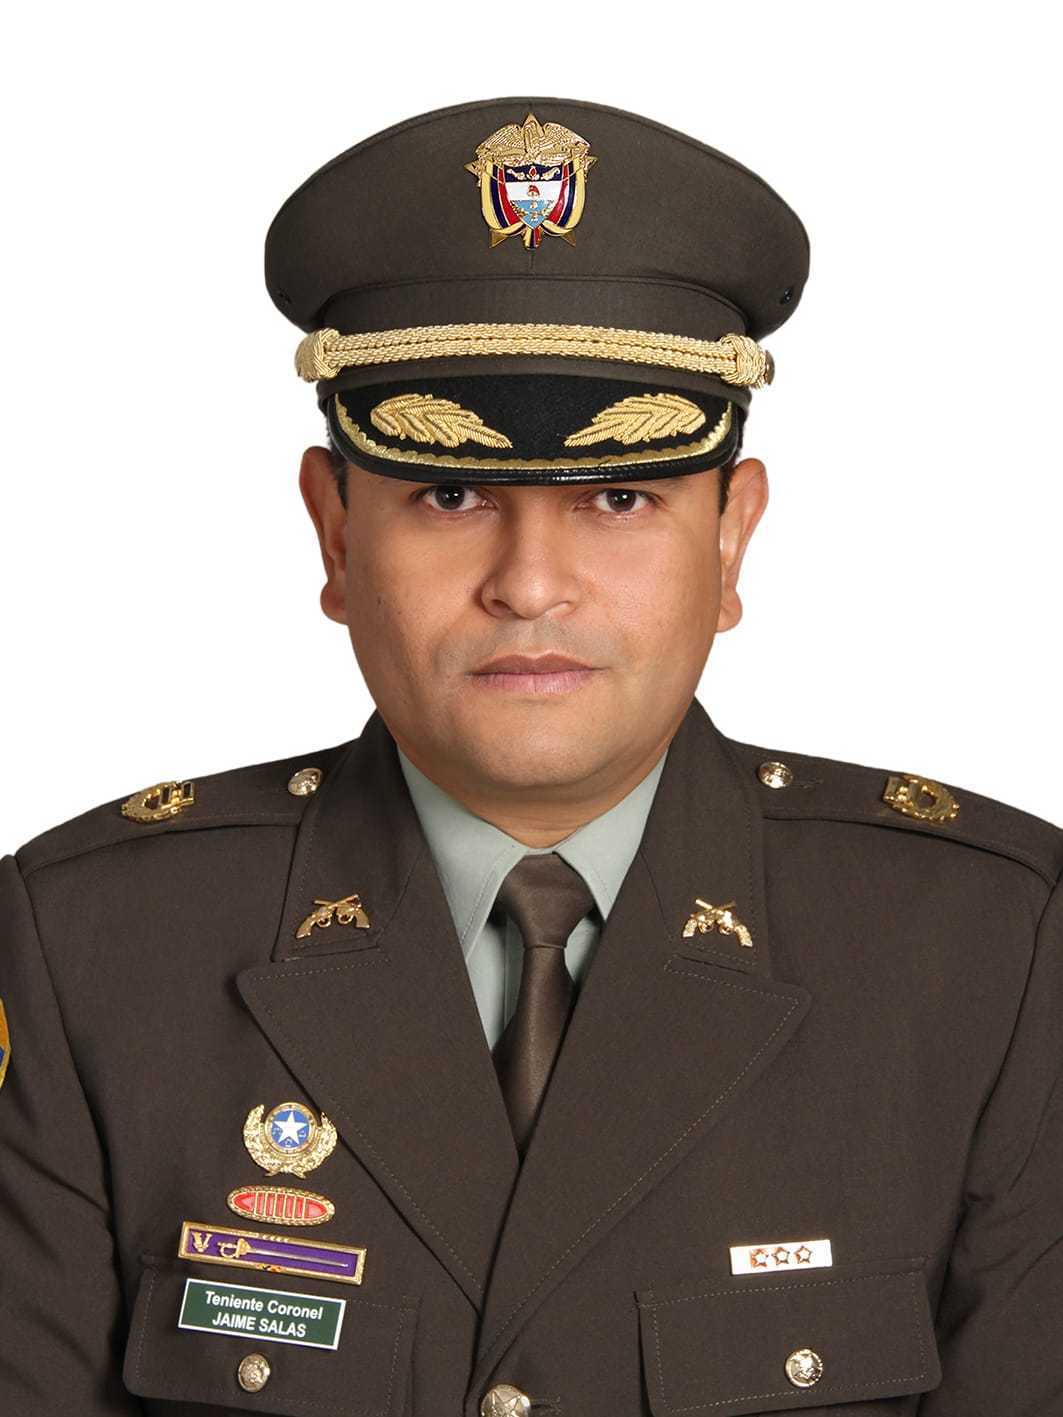 Teniente coronel, Jaime Alberto Salas Gómez